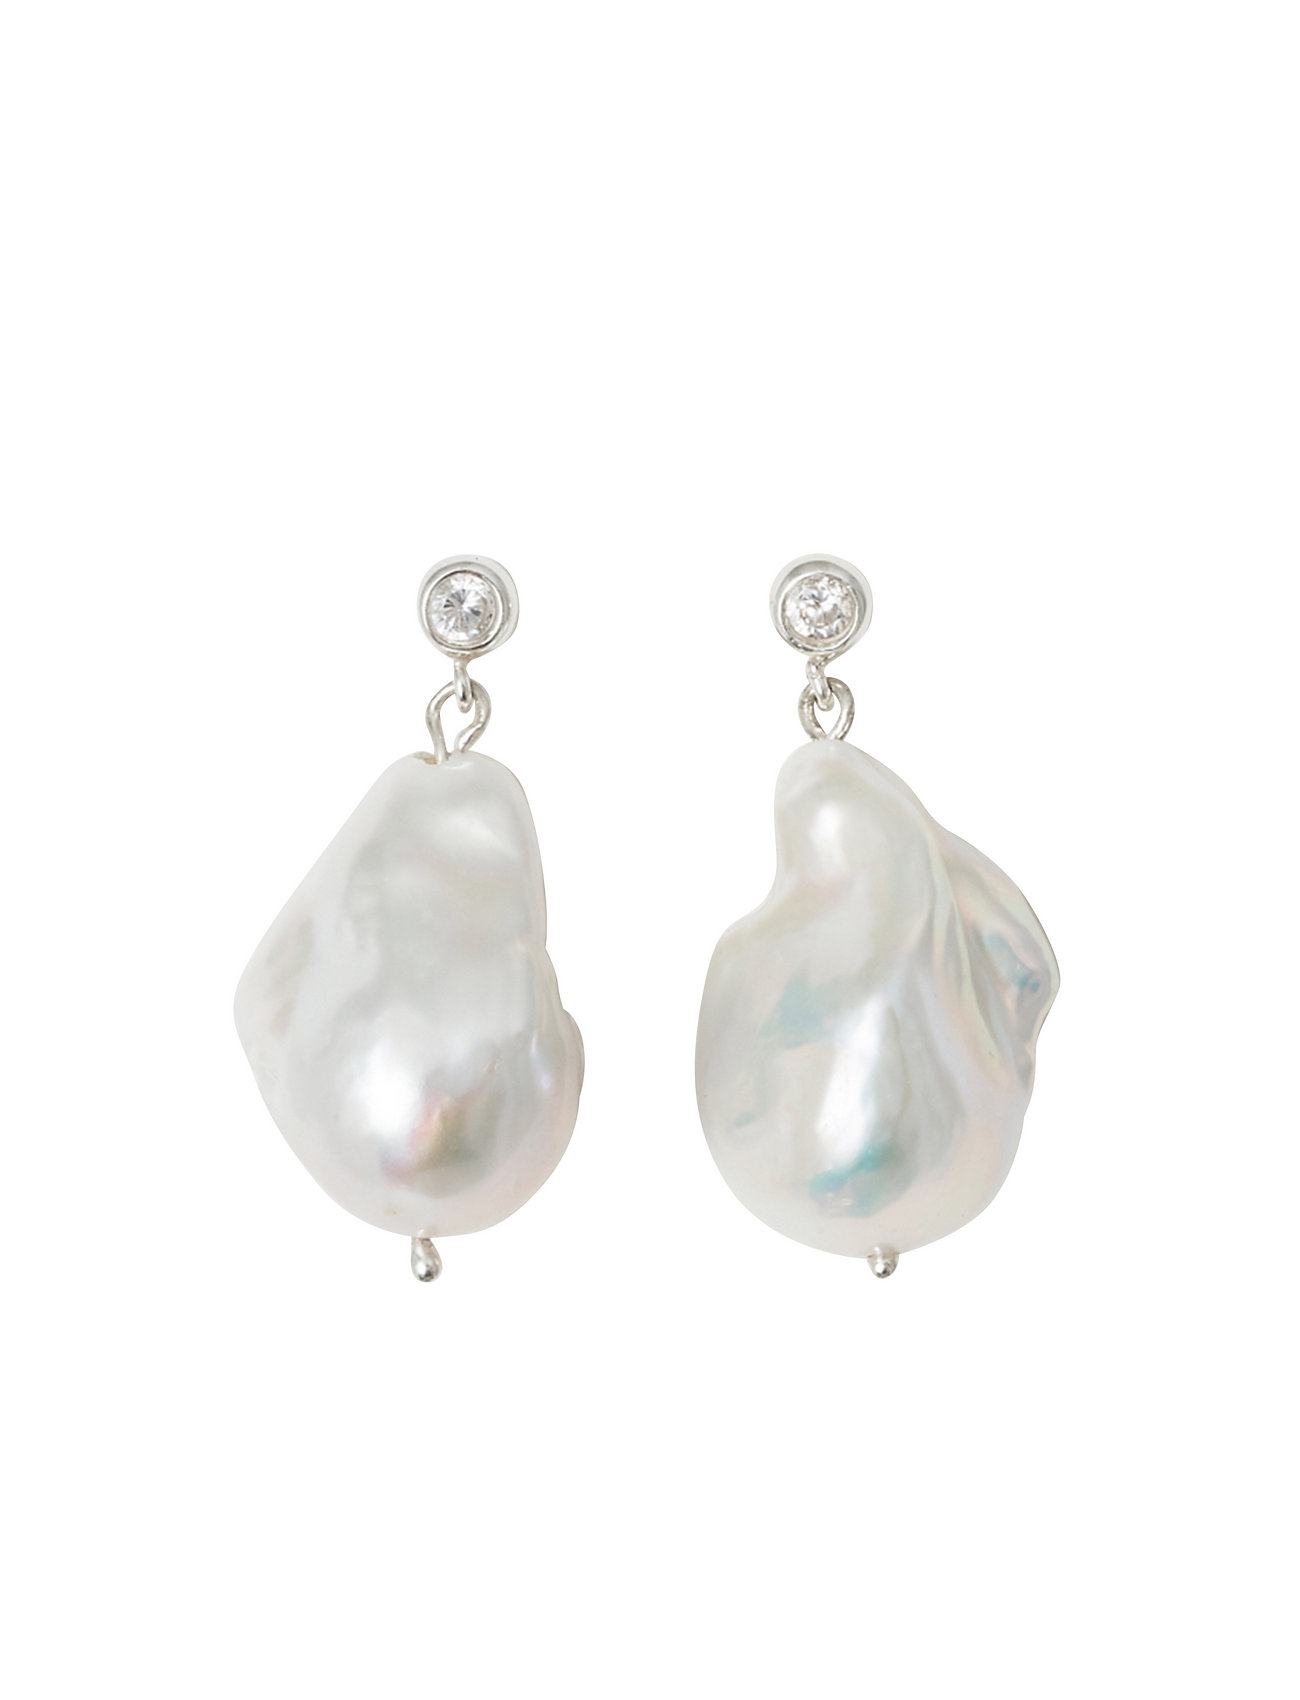 Giant Pearl Earrings Designers Jewellery Earrings Pendants Earrings Silver Blue Billie